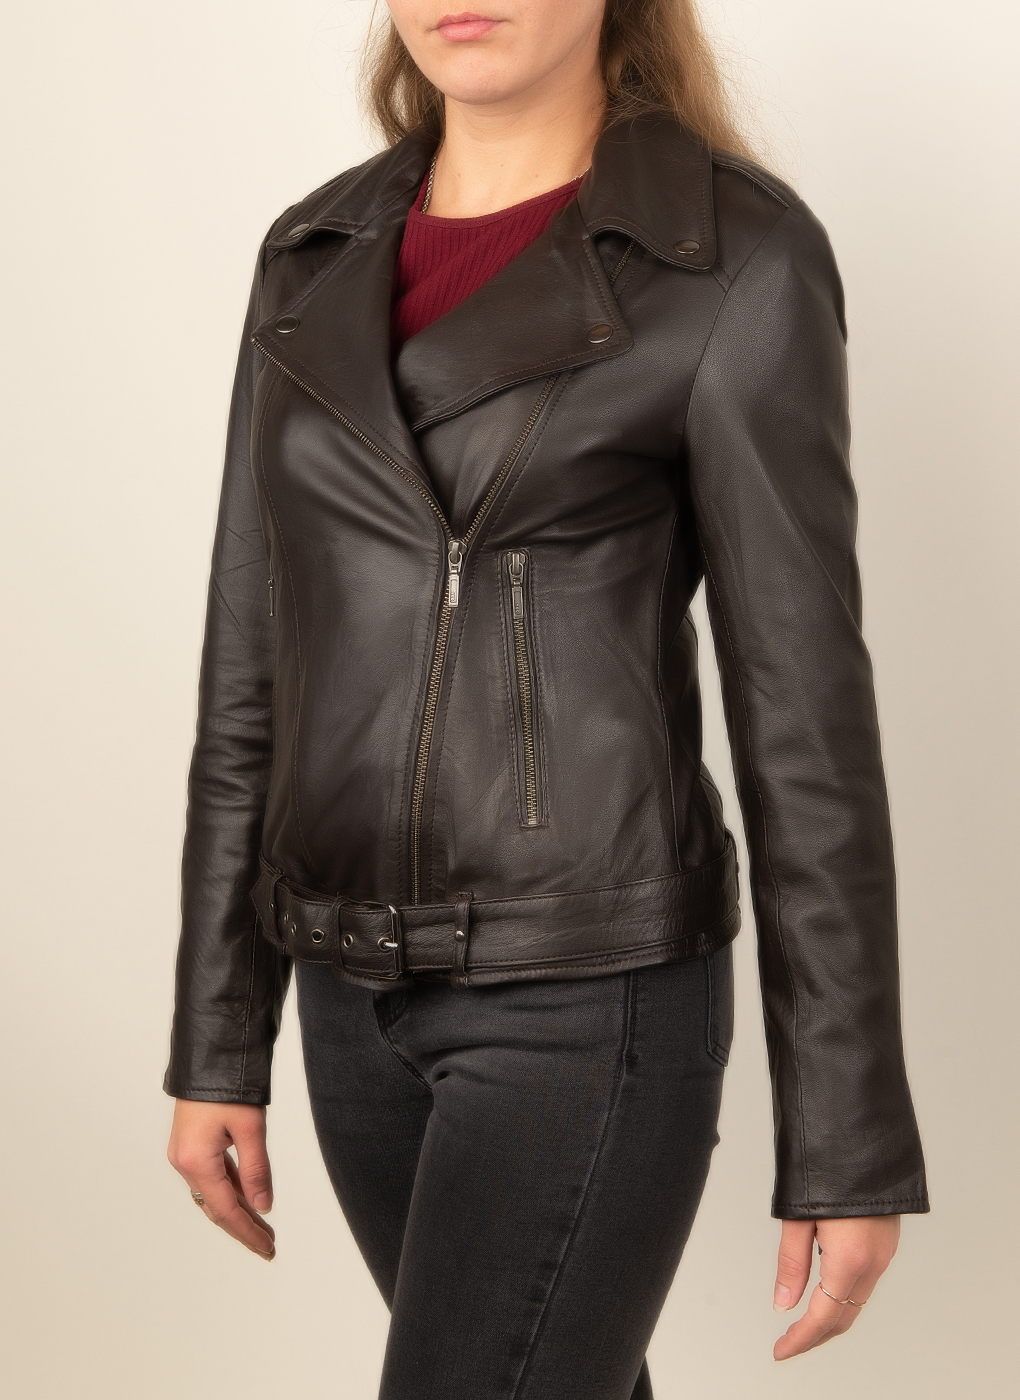 Кожаная куртка женская Каляев 47860 коричневая 44 RU